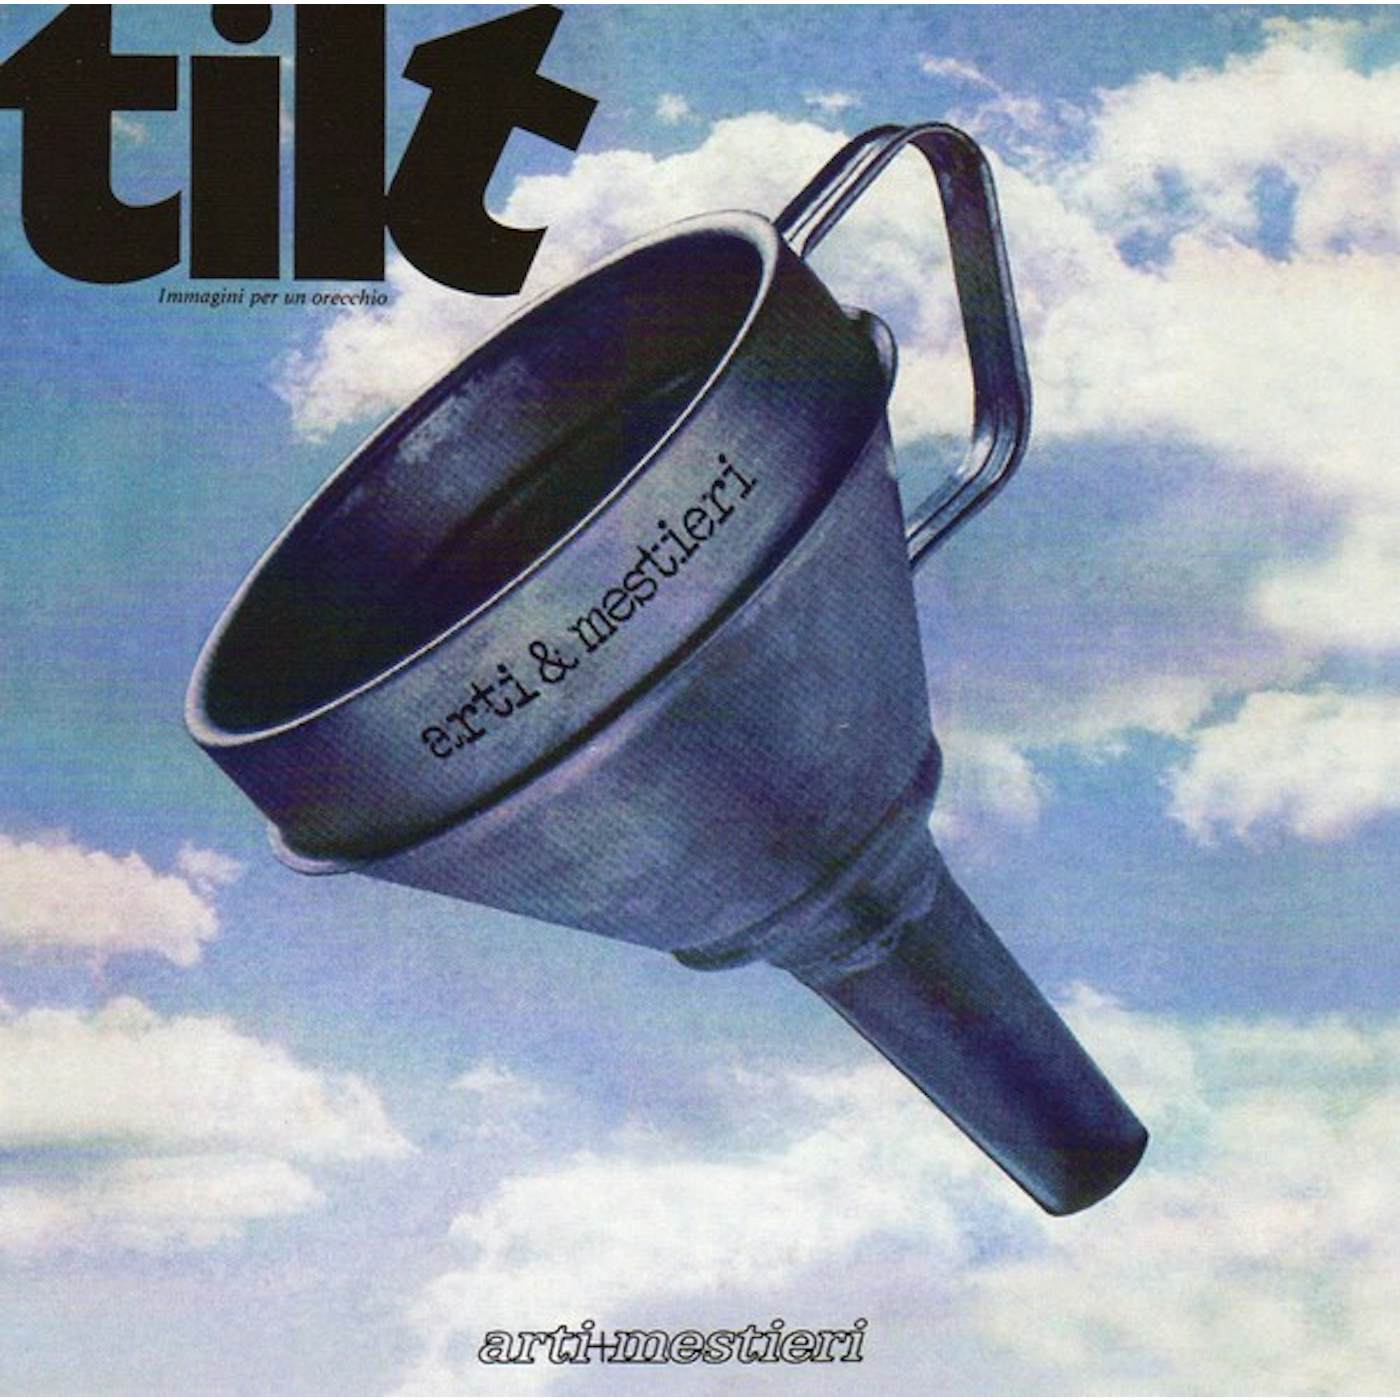 Arti & Mestieri TILT (IMMAGINI PER UN ORECCHIO) Vinyl Record